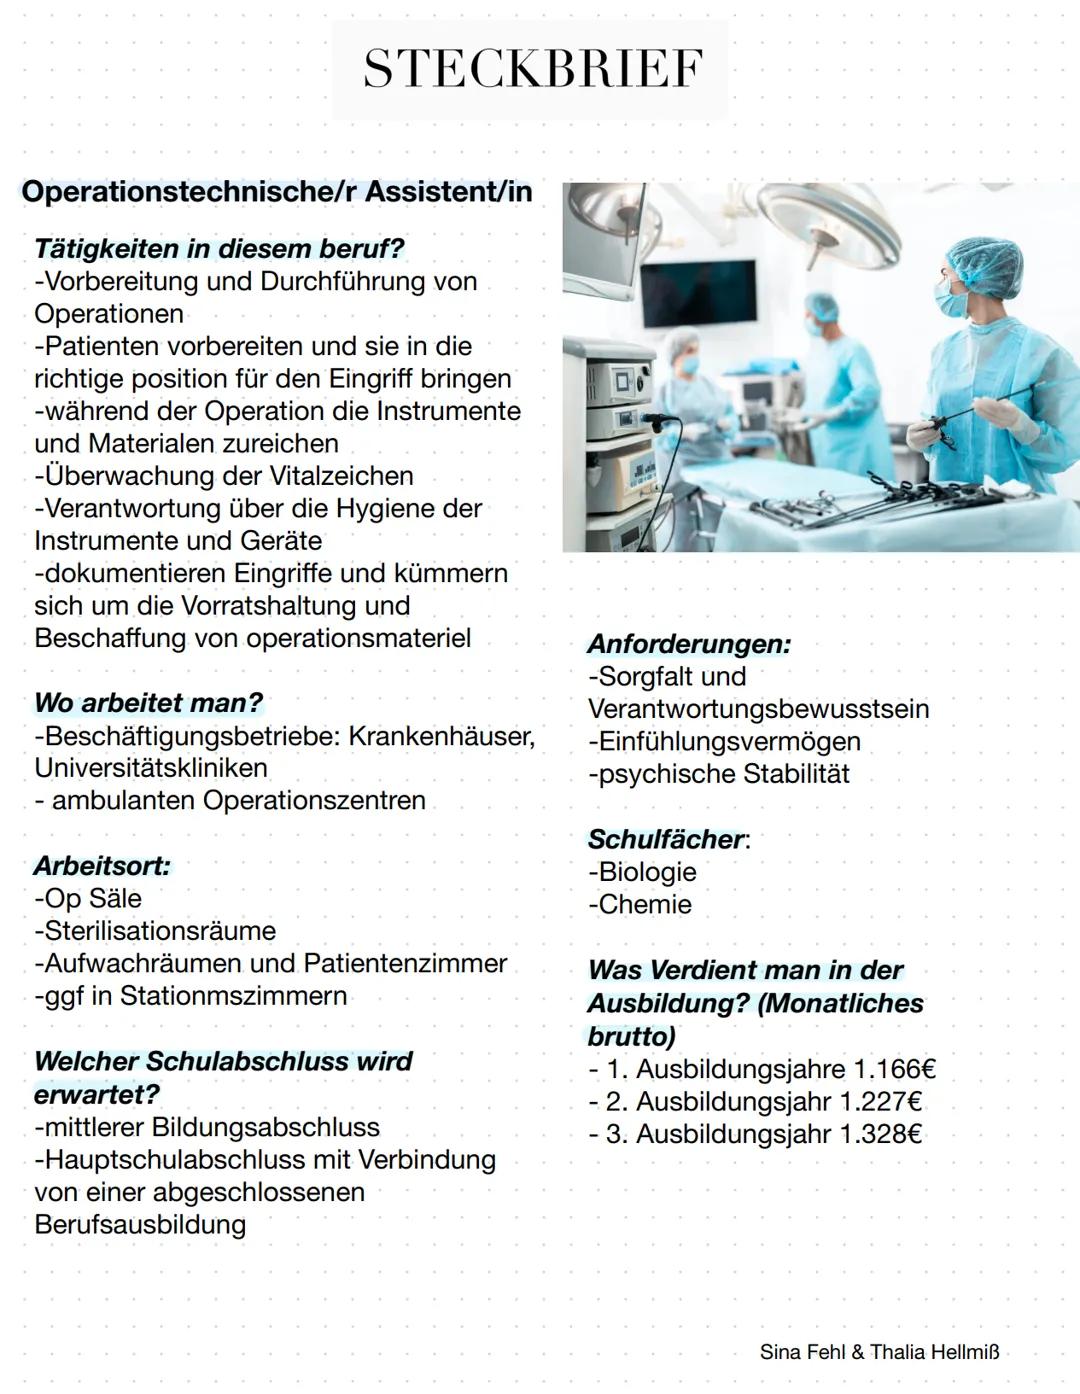 STECKBRIEF
Operationstechnische/r Assistent/in
Tätigkeiten in diesem beruf?
-Vorbereitung und Durchführung von
Operationen
-Patienten vorber